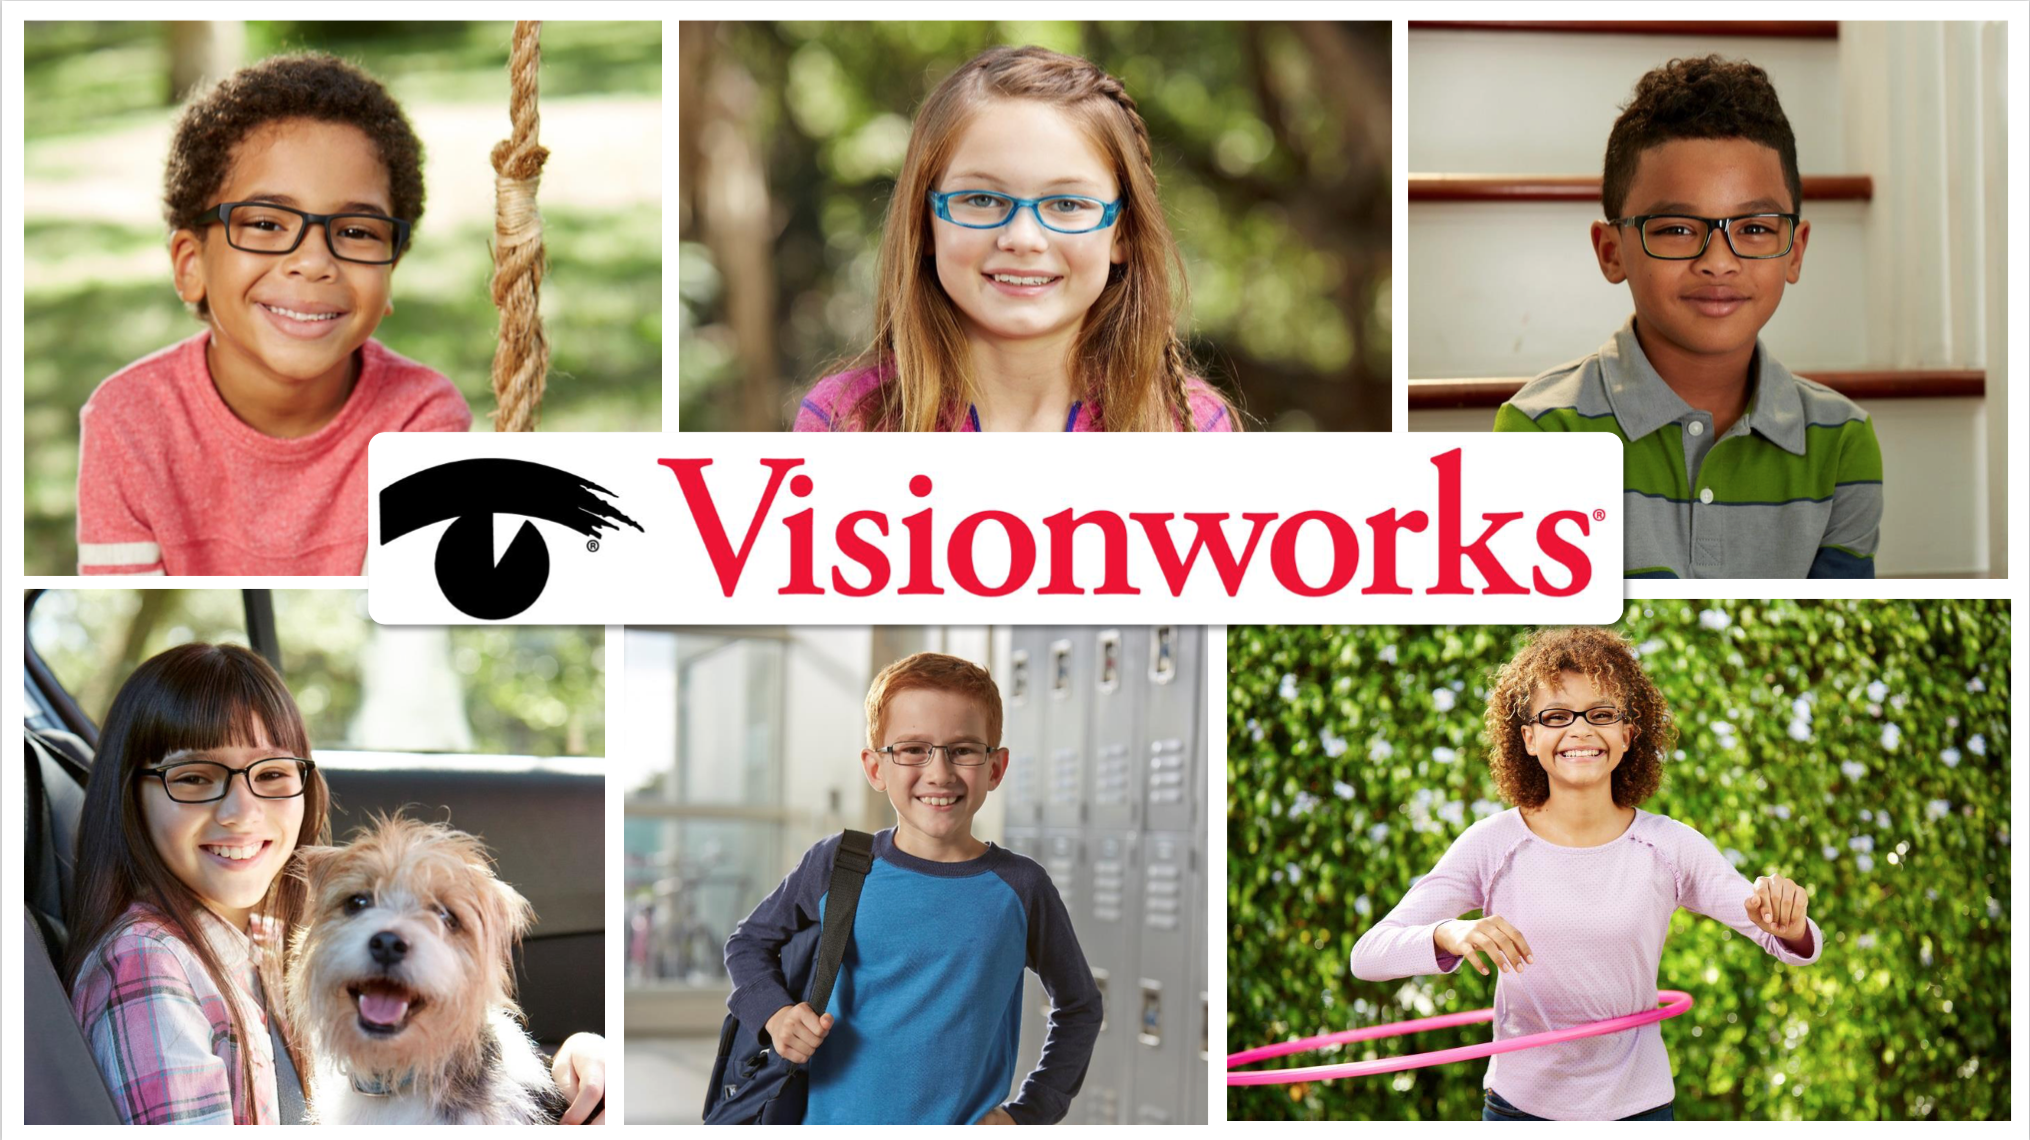 Vision works kid's eyeglasses